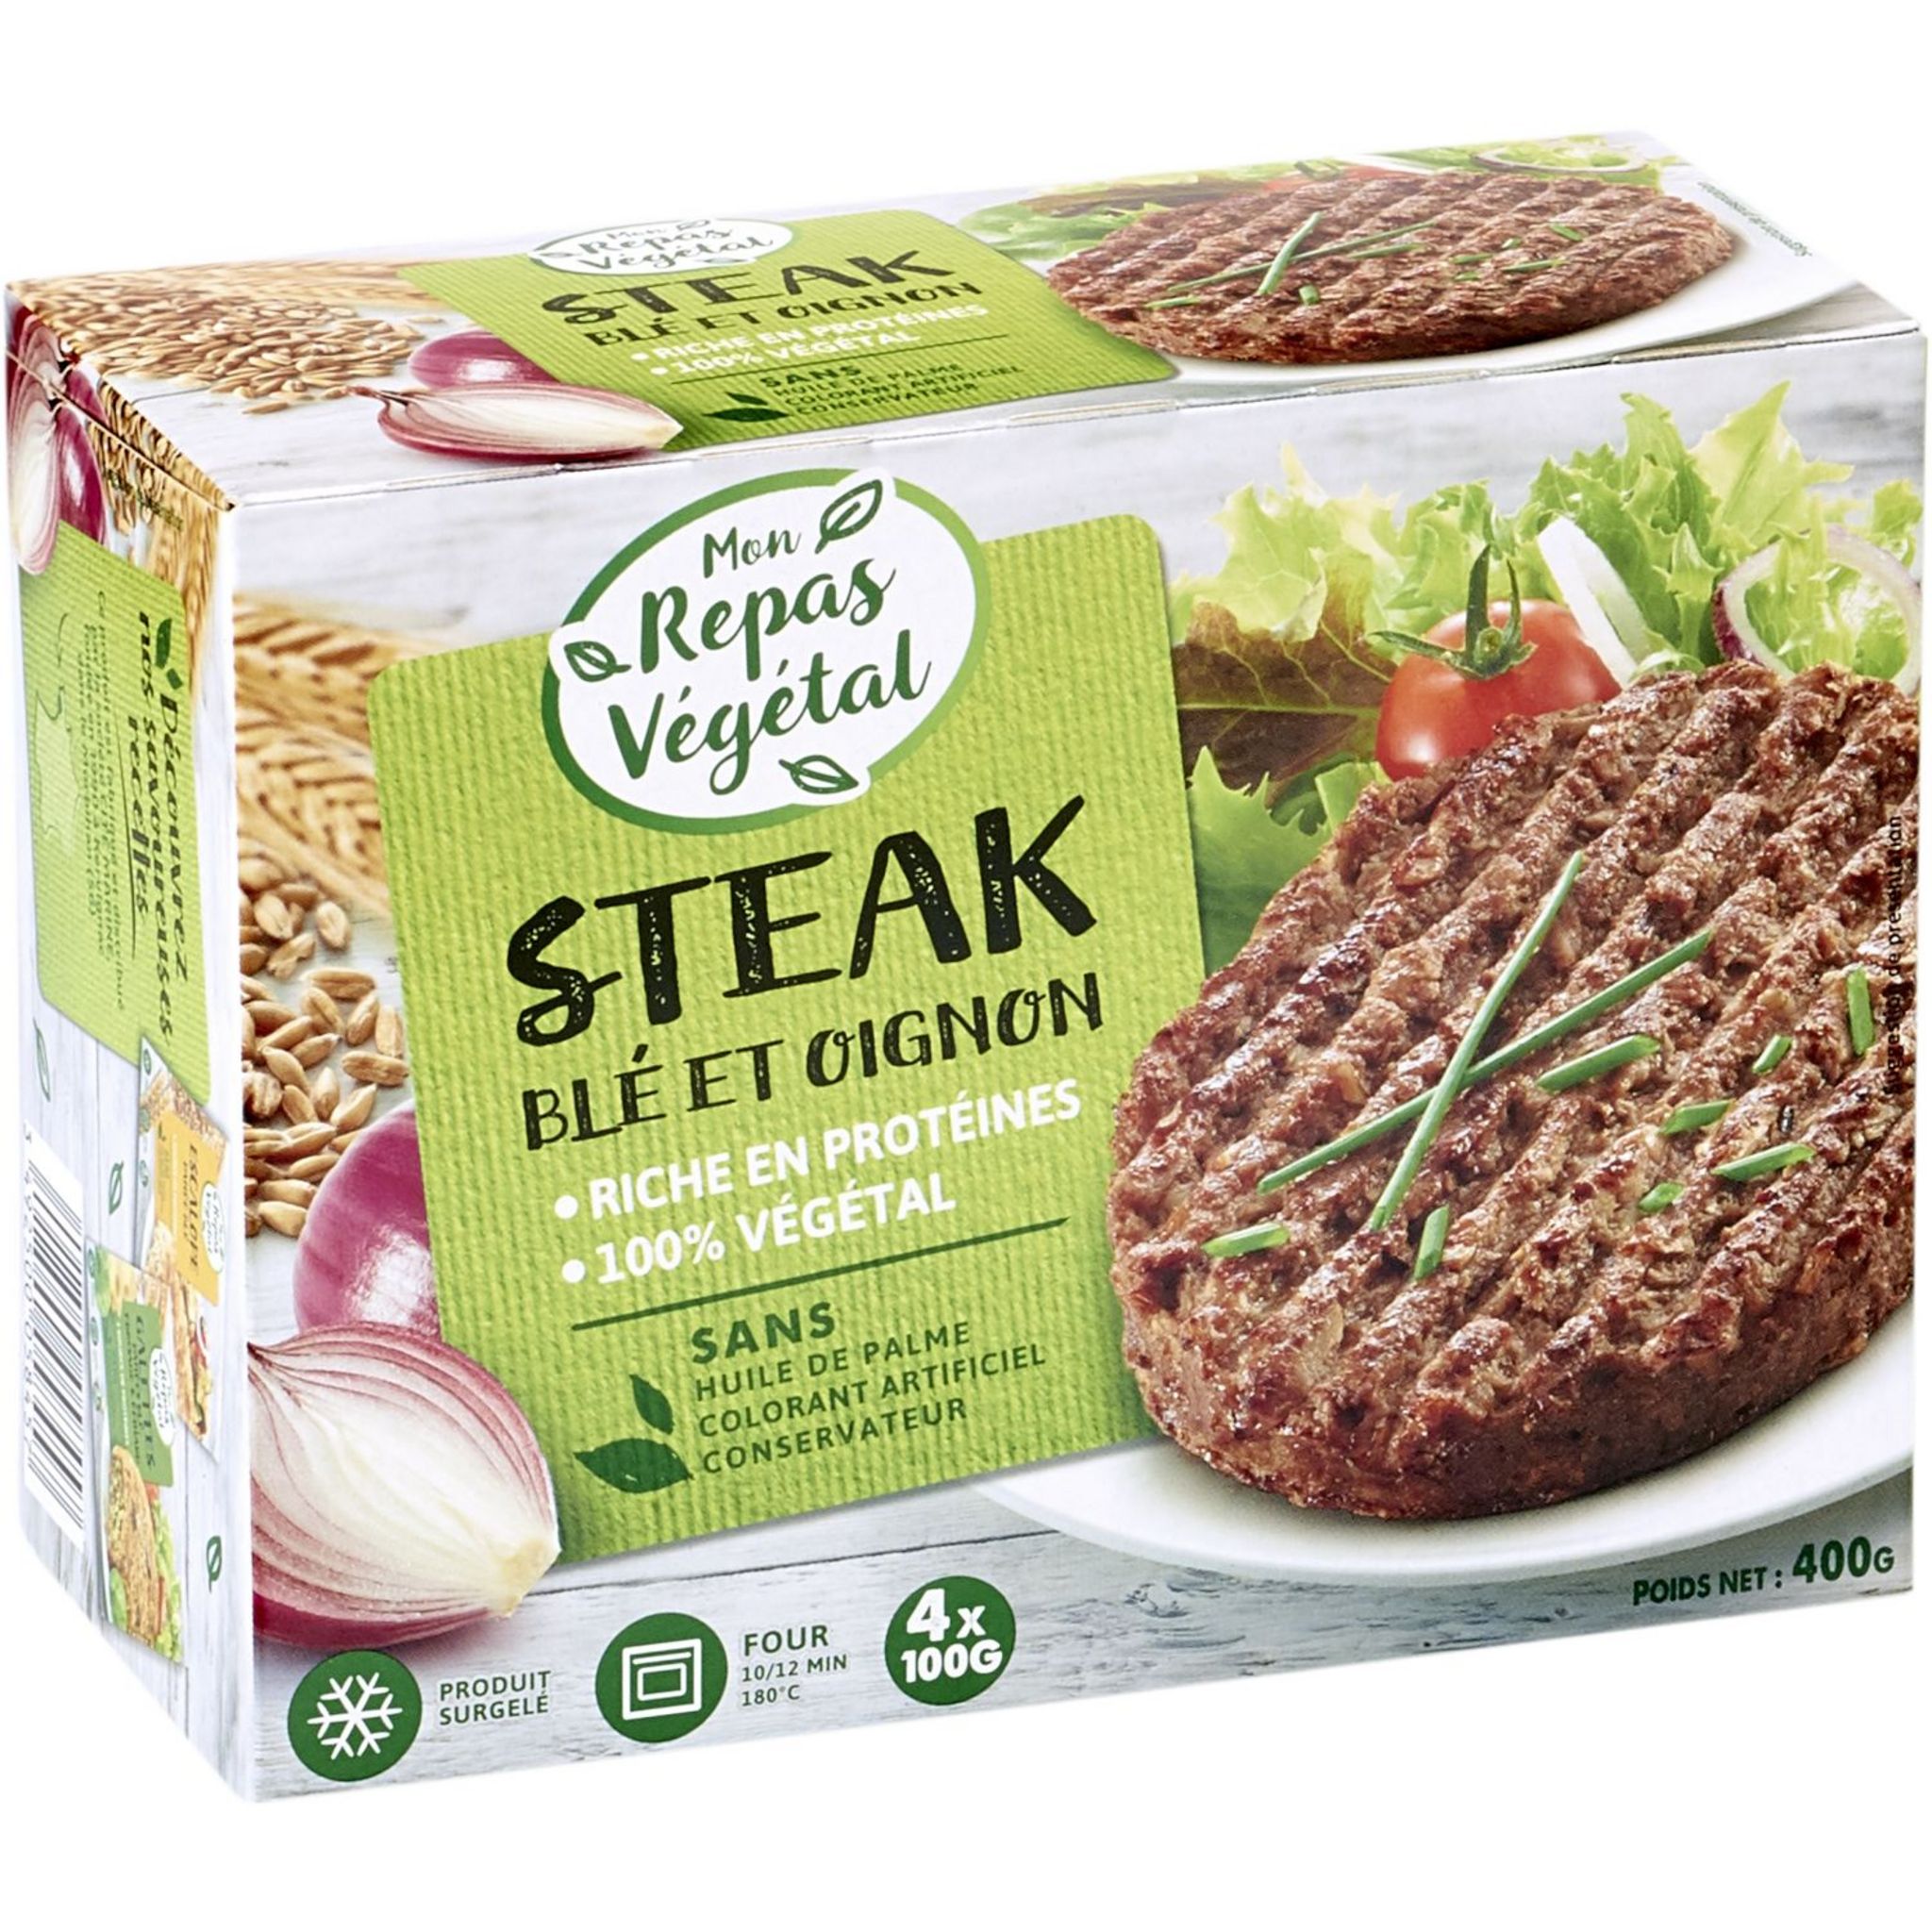 Steak végétal aux PST (keto et végétarien)